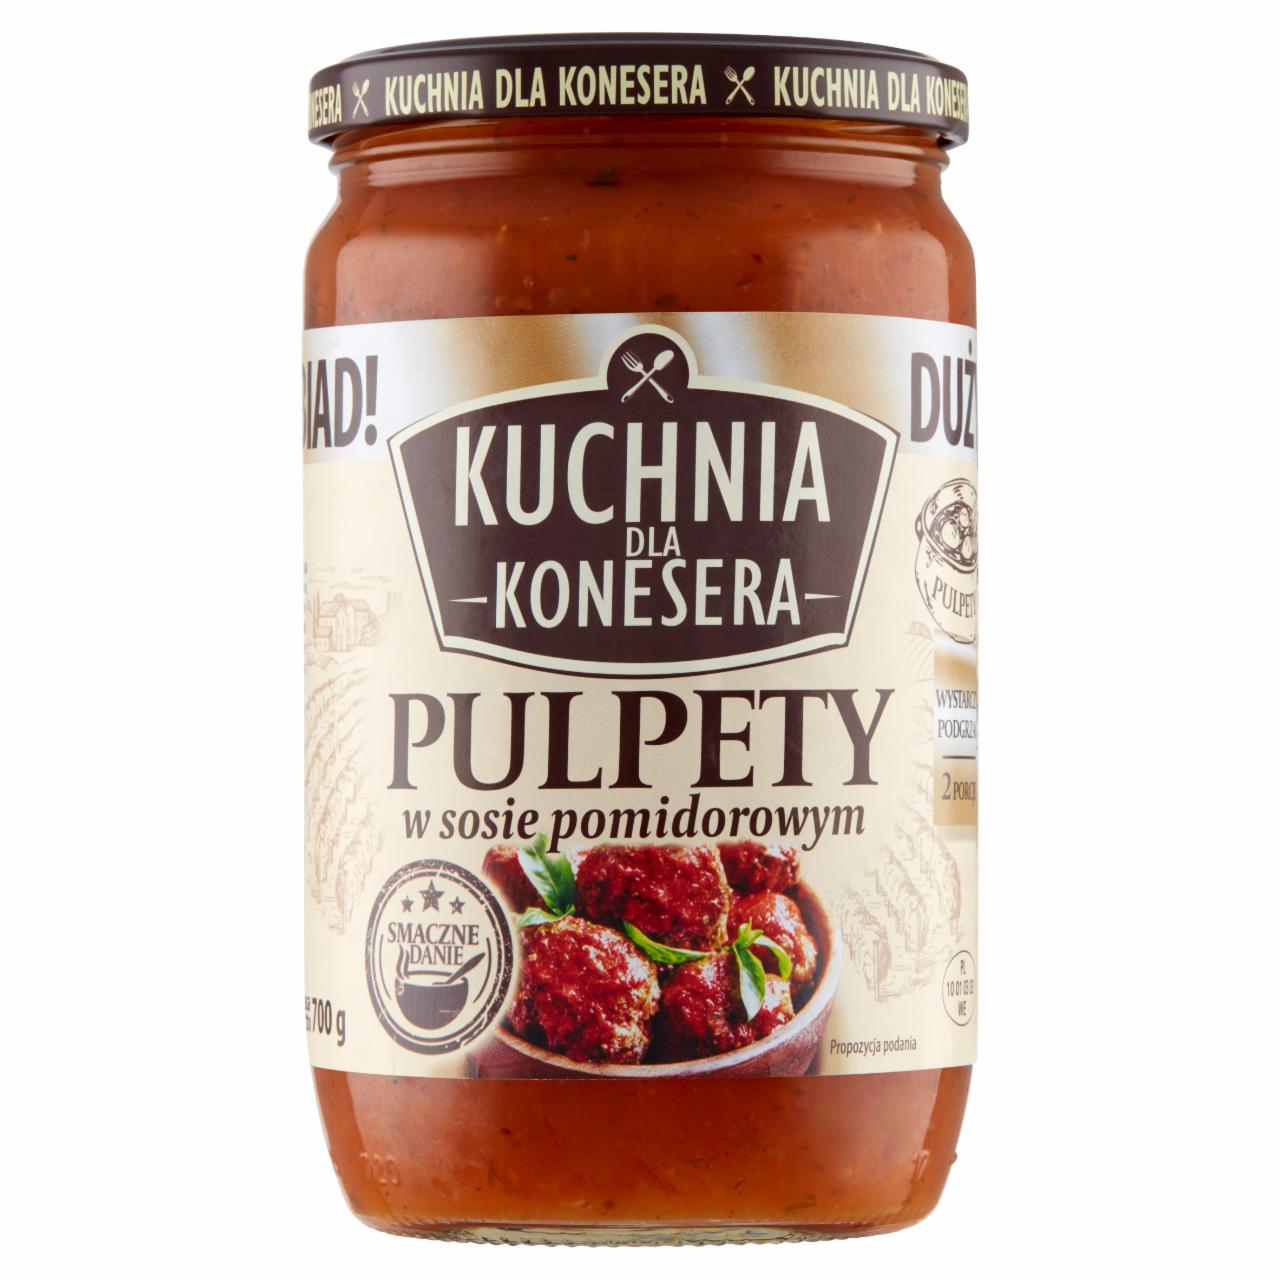 Zdjęcia - Kuchnia dla konesera Pulpety w sosie pomidorowym 700 g